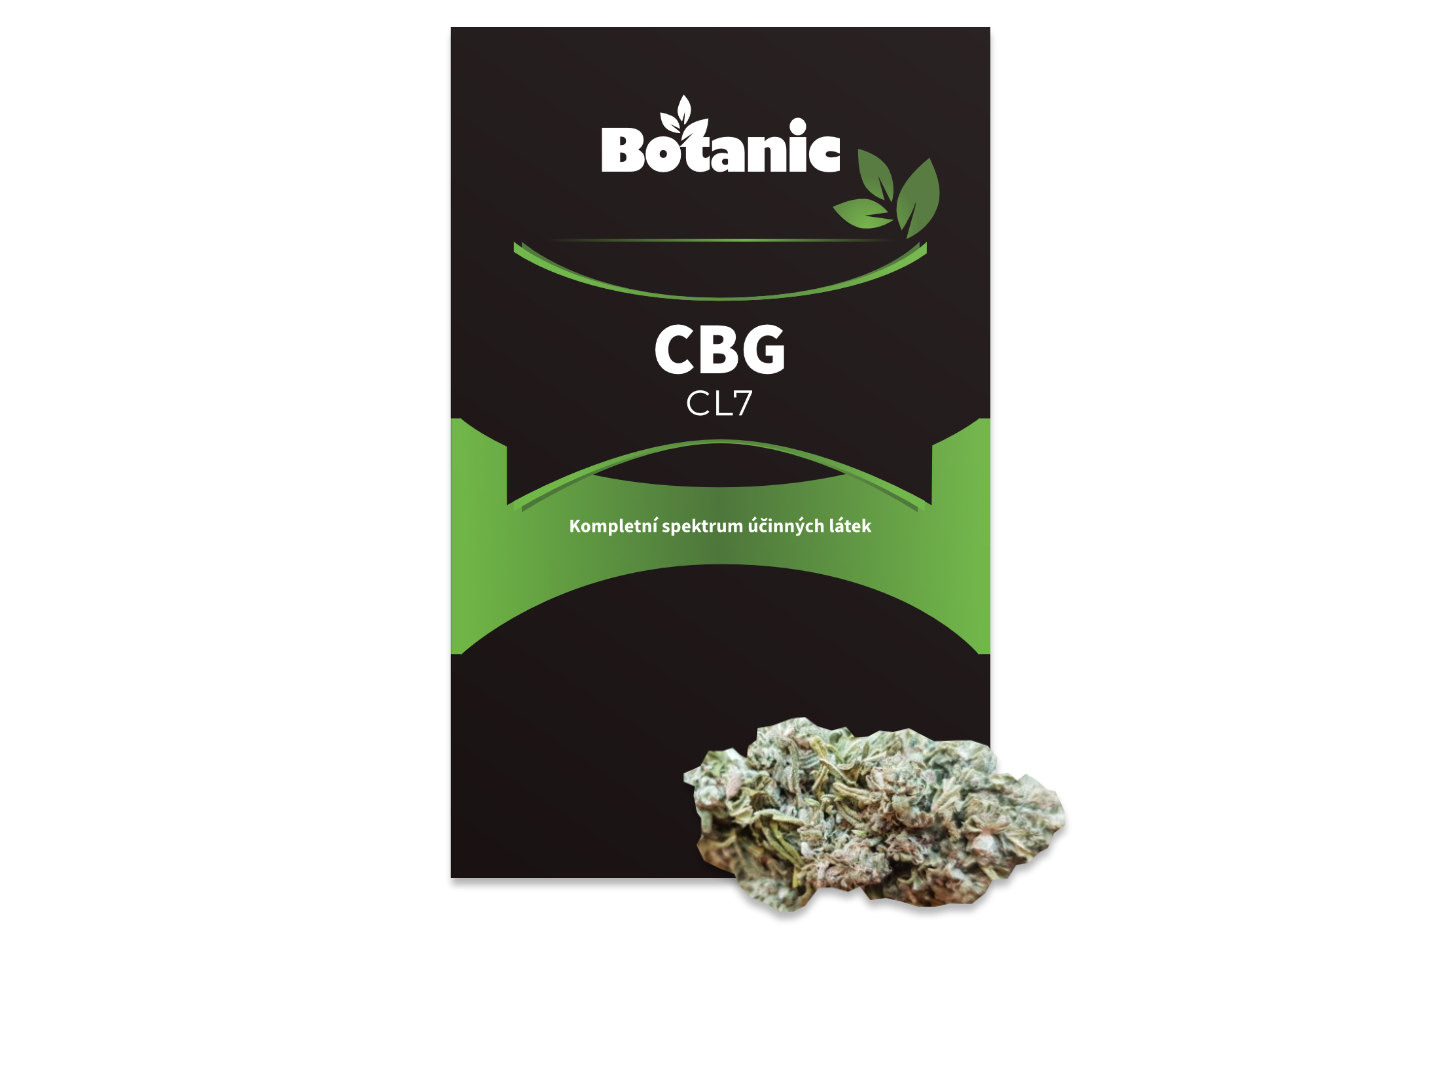 Botanic CBG konopí - CL7 1 g - Na zkoušku